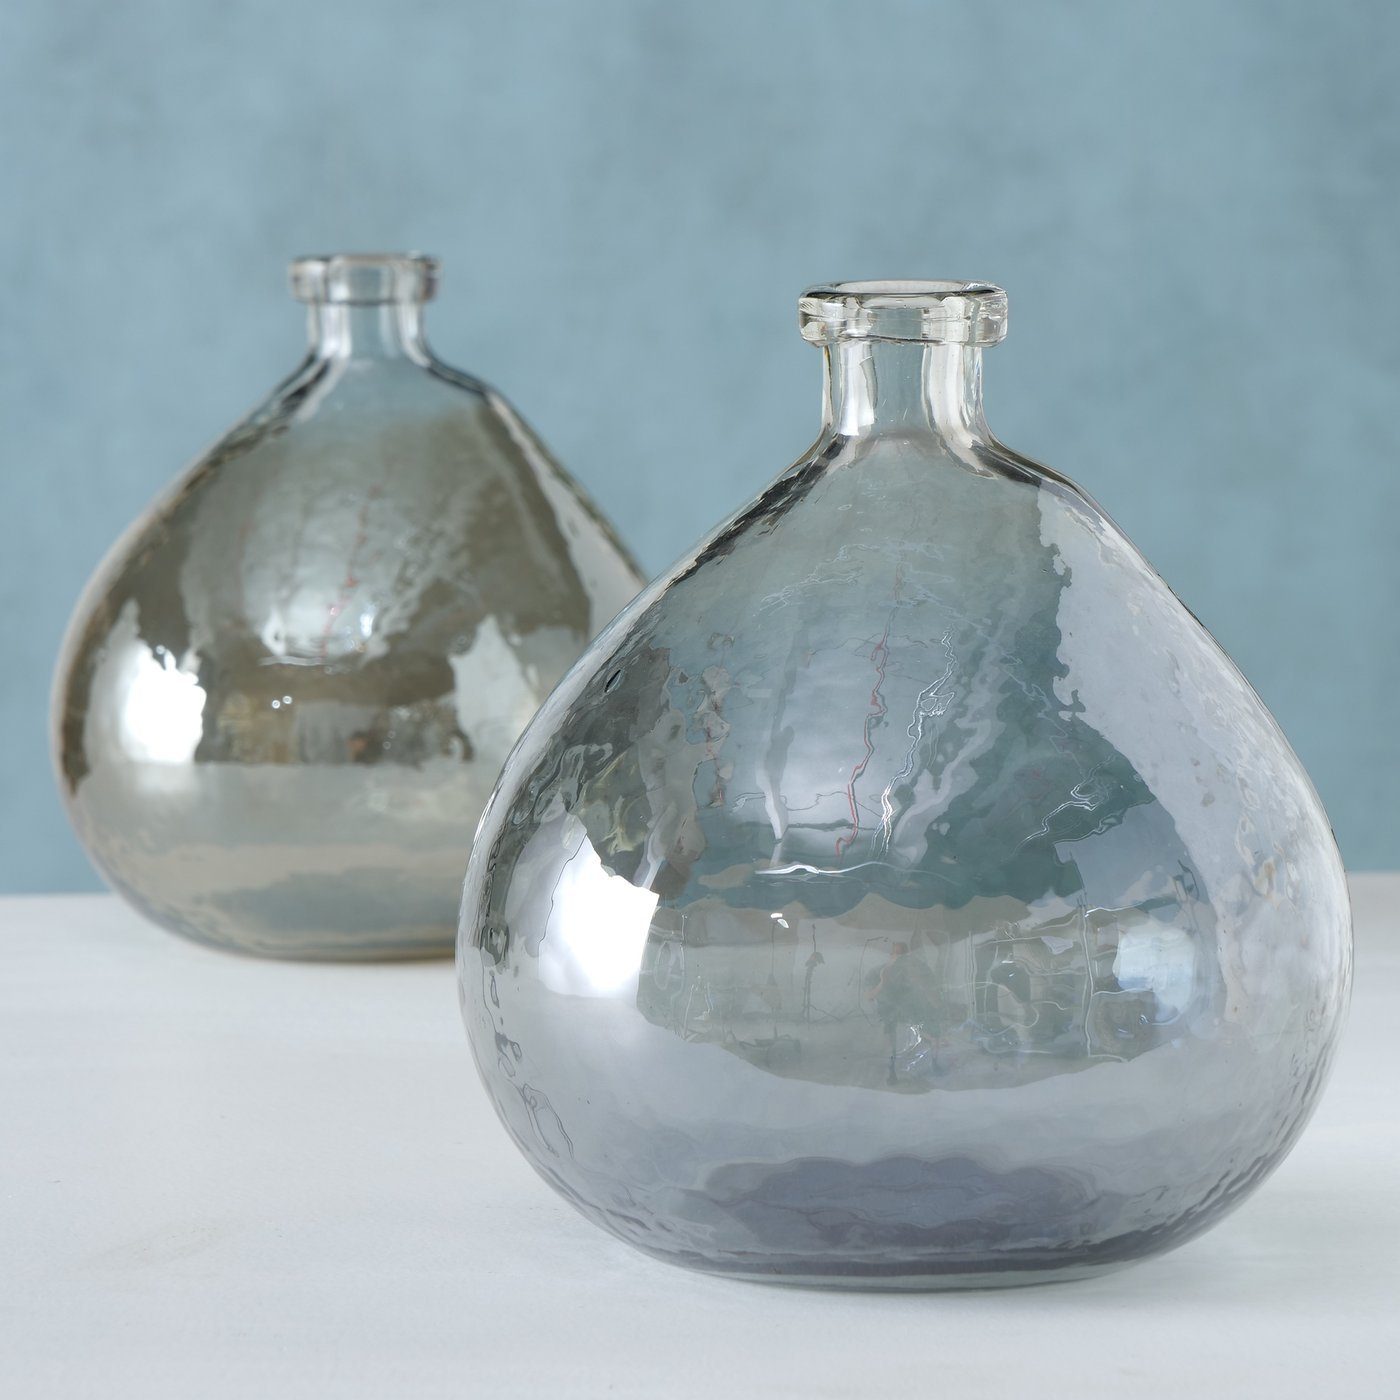 BOLTZE Dekovase 2er Set "Sligo" aus Glas in grau/braun, Vase Blumenvase